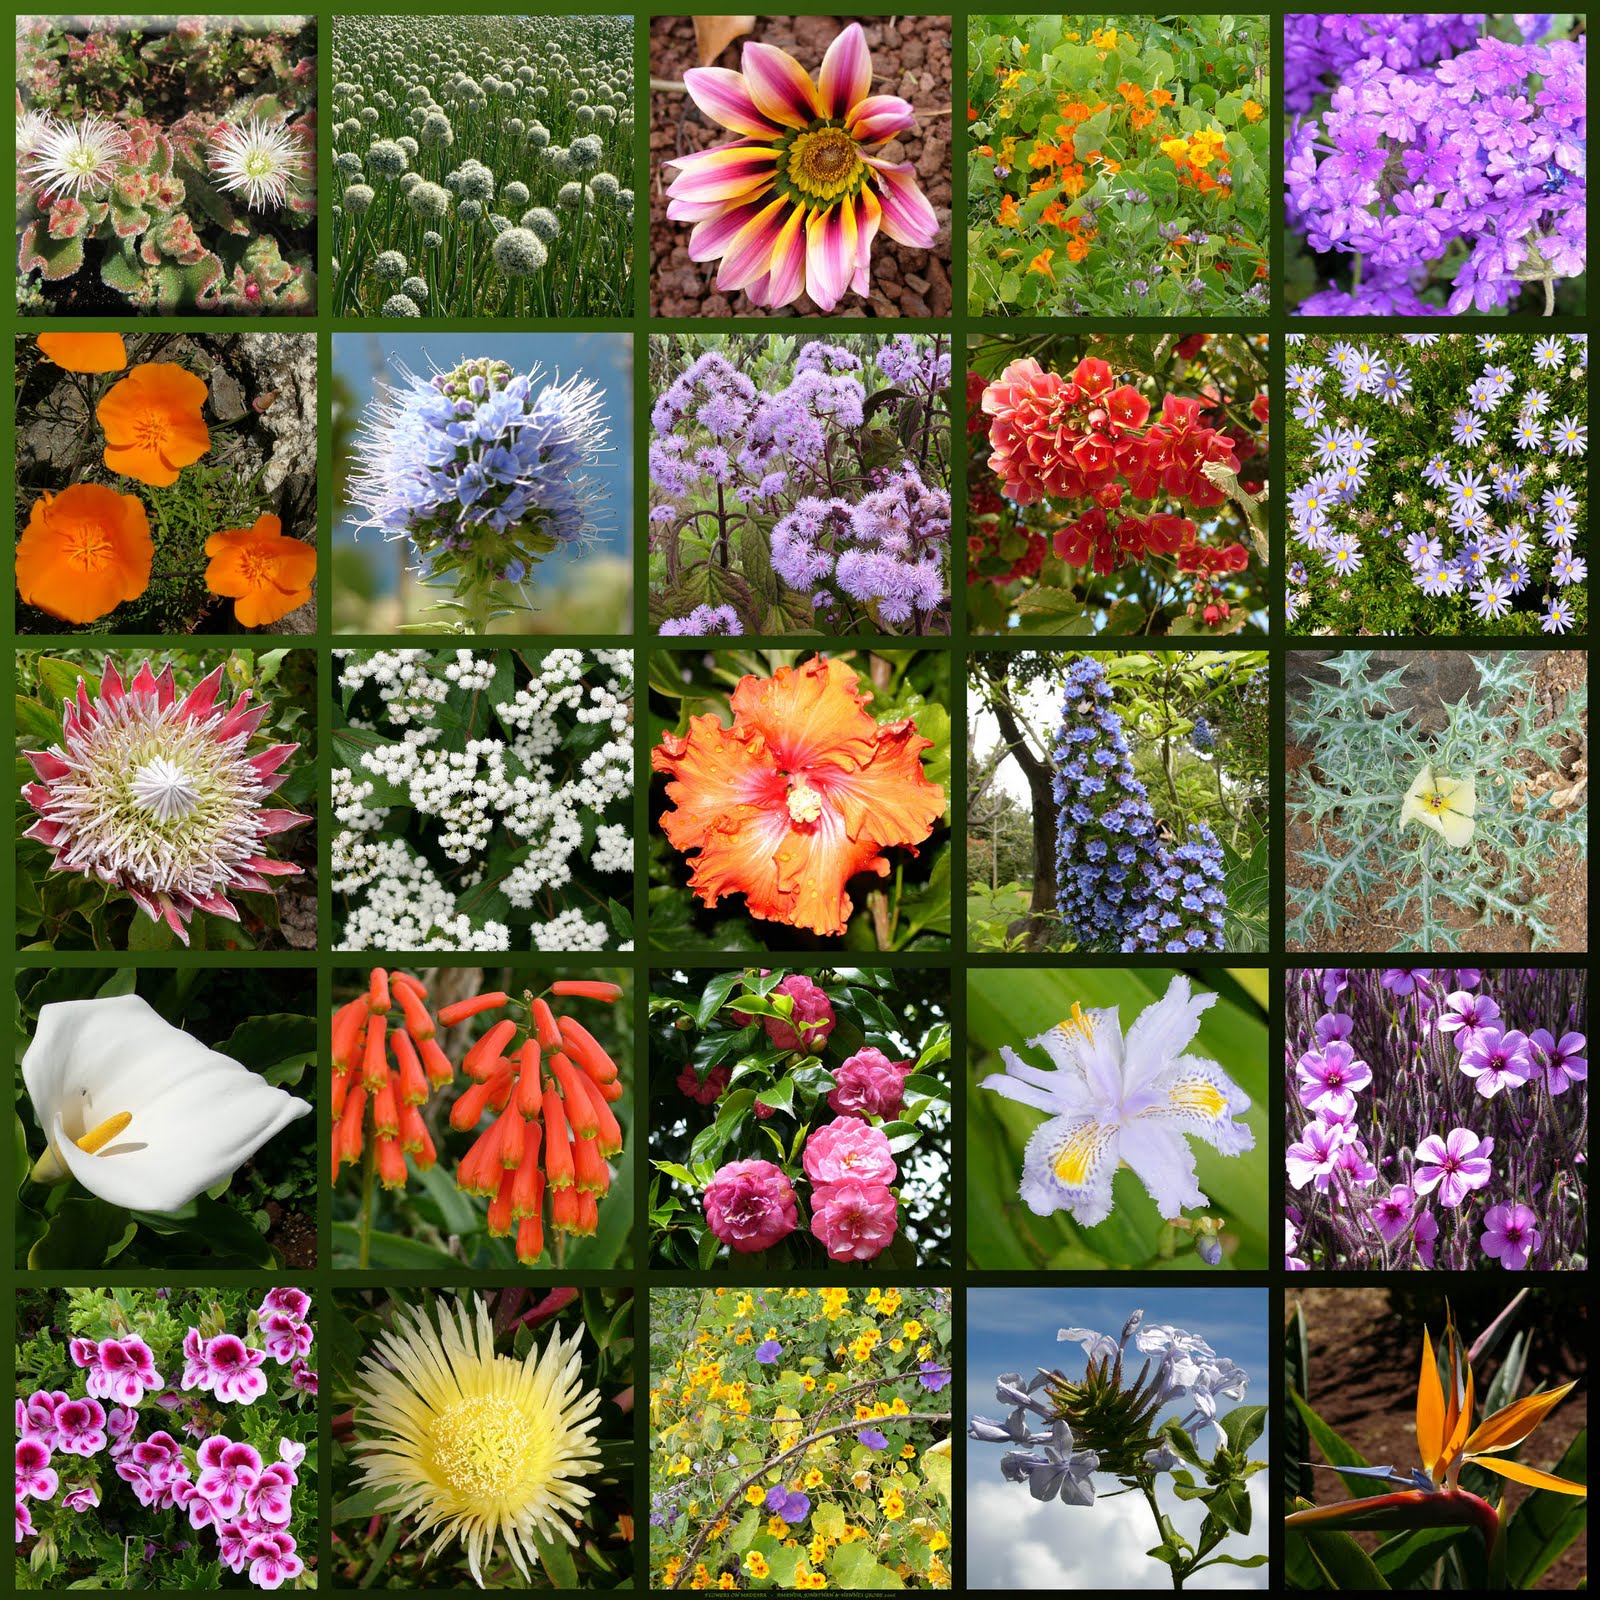 картинки растения и их названия